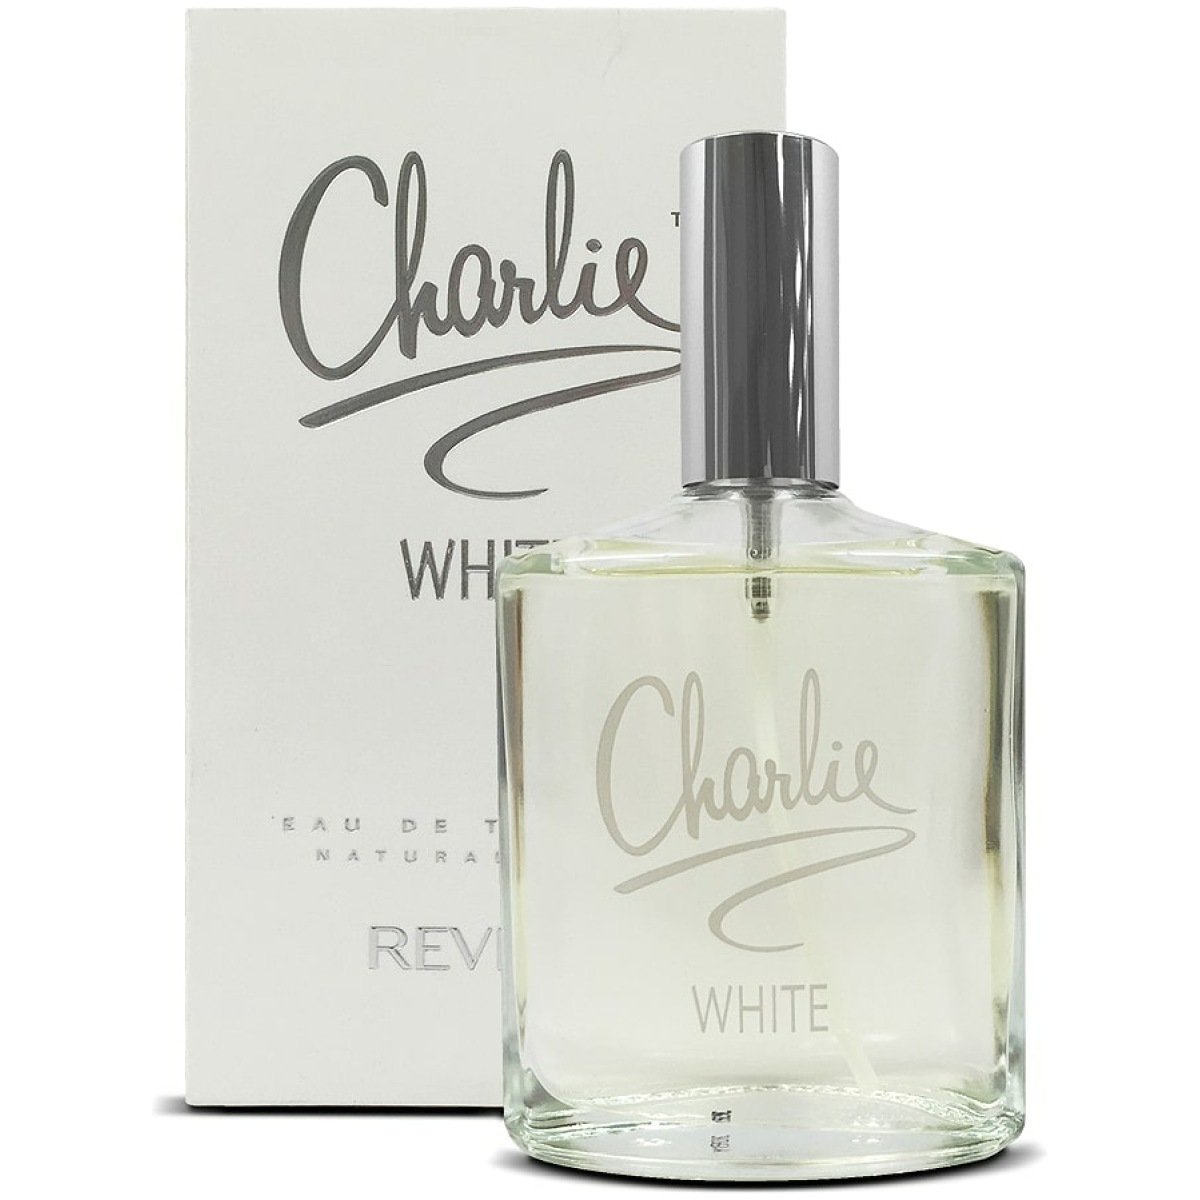 Revlon Charlie White EDT Perfume 100ml